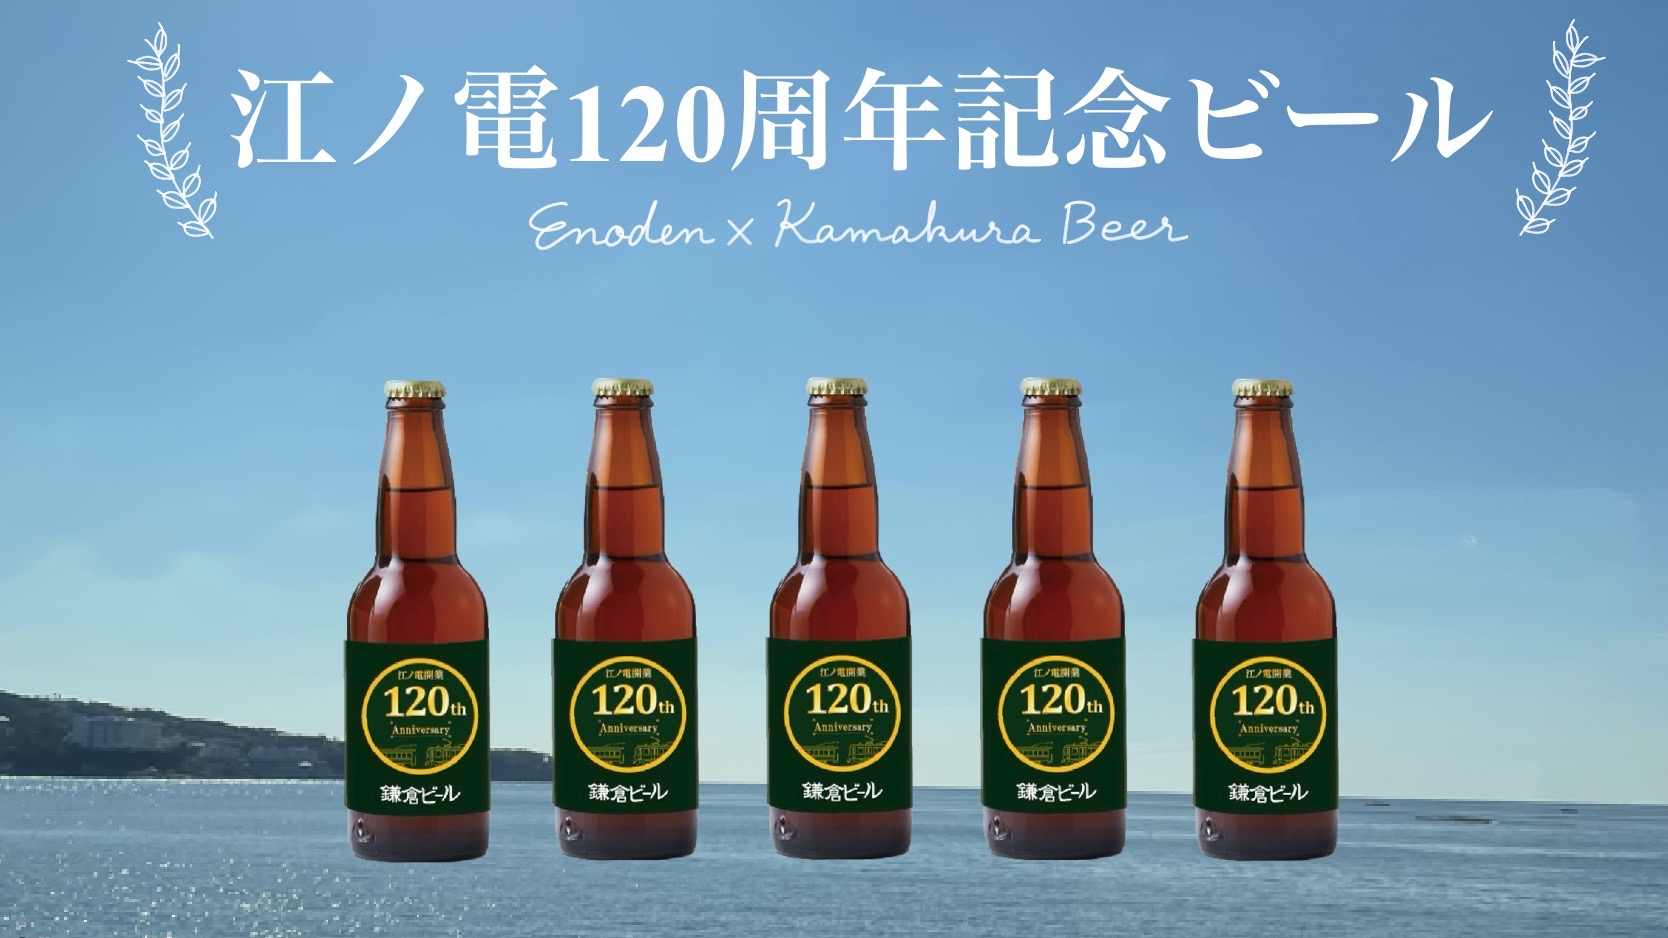 江ノ電120周年記念ビールの発売について